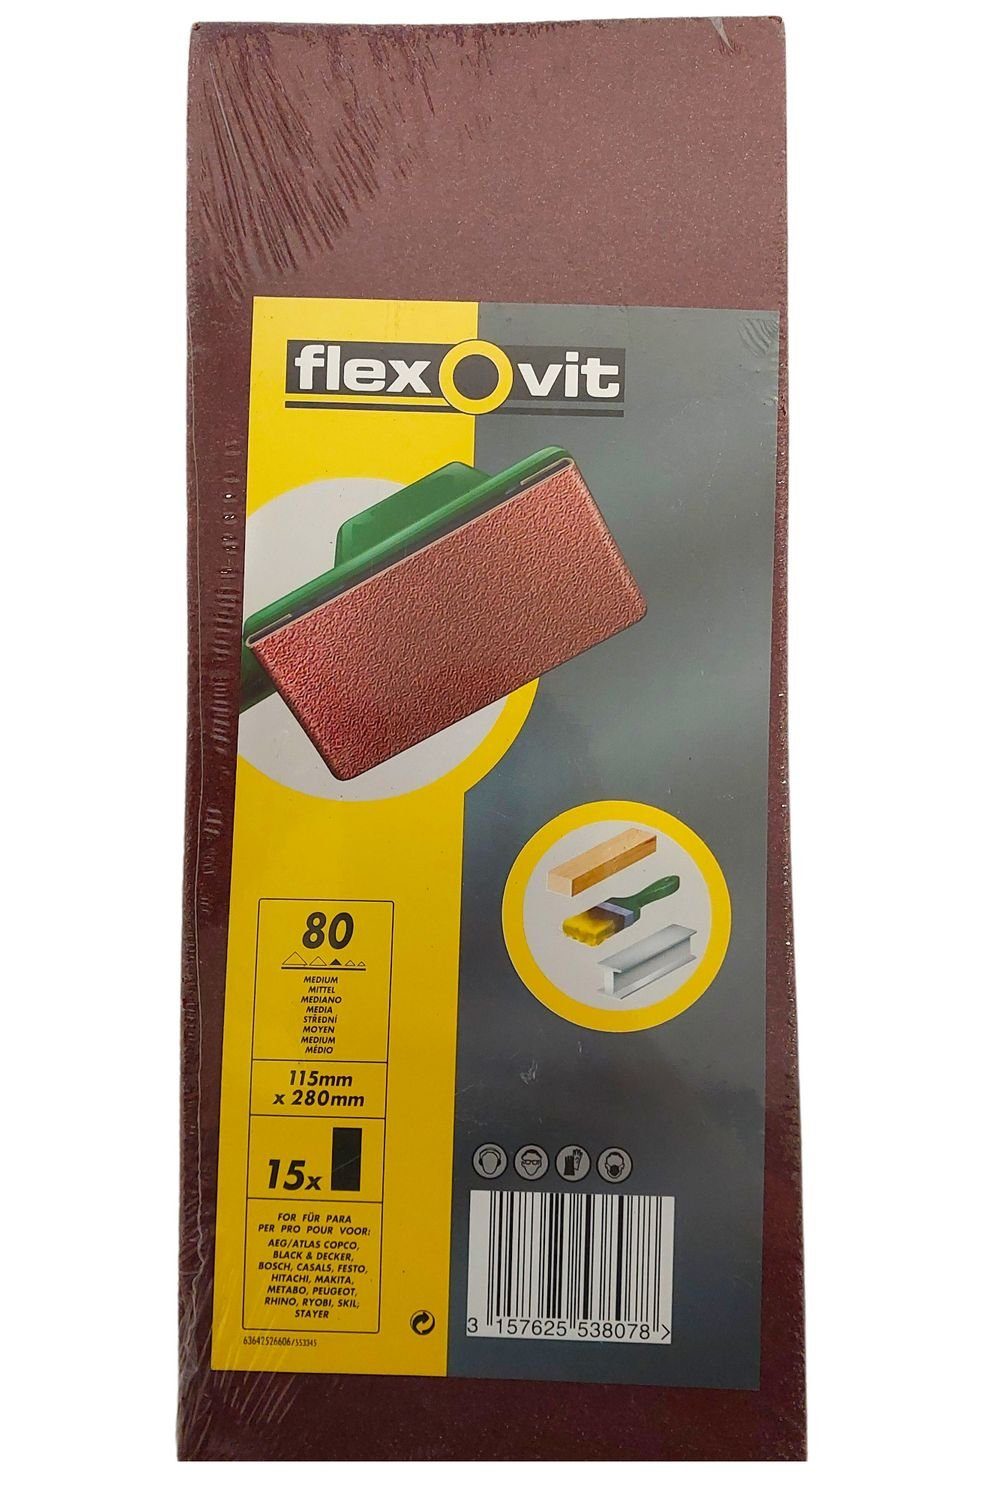 flexovit Schleifpapier 15 STK Schleifpapier für Schwingschleifer Körnung 80  115mm x 280mm sch, (15 St)